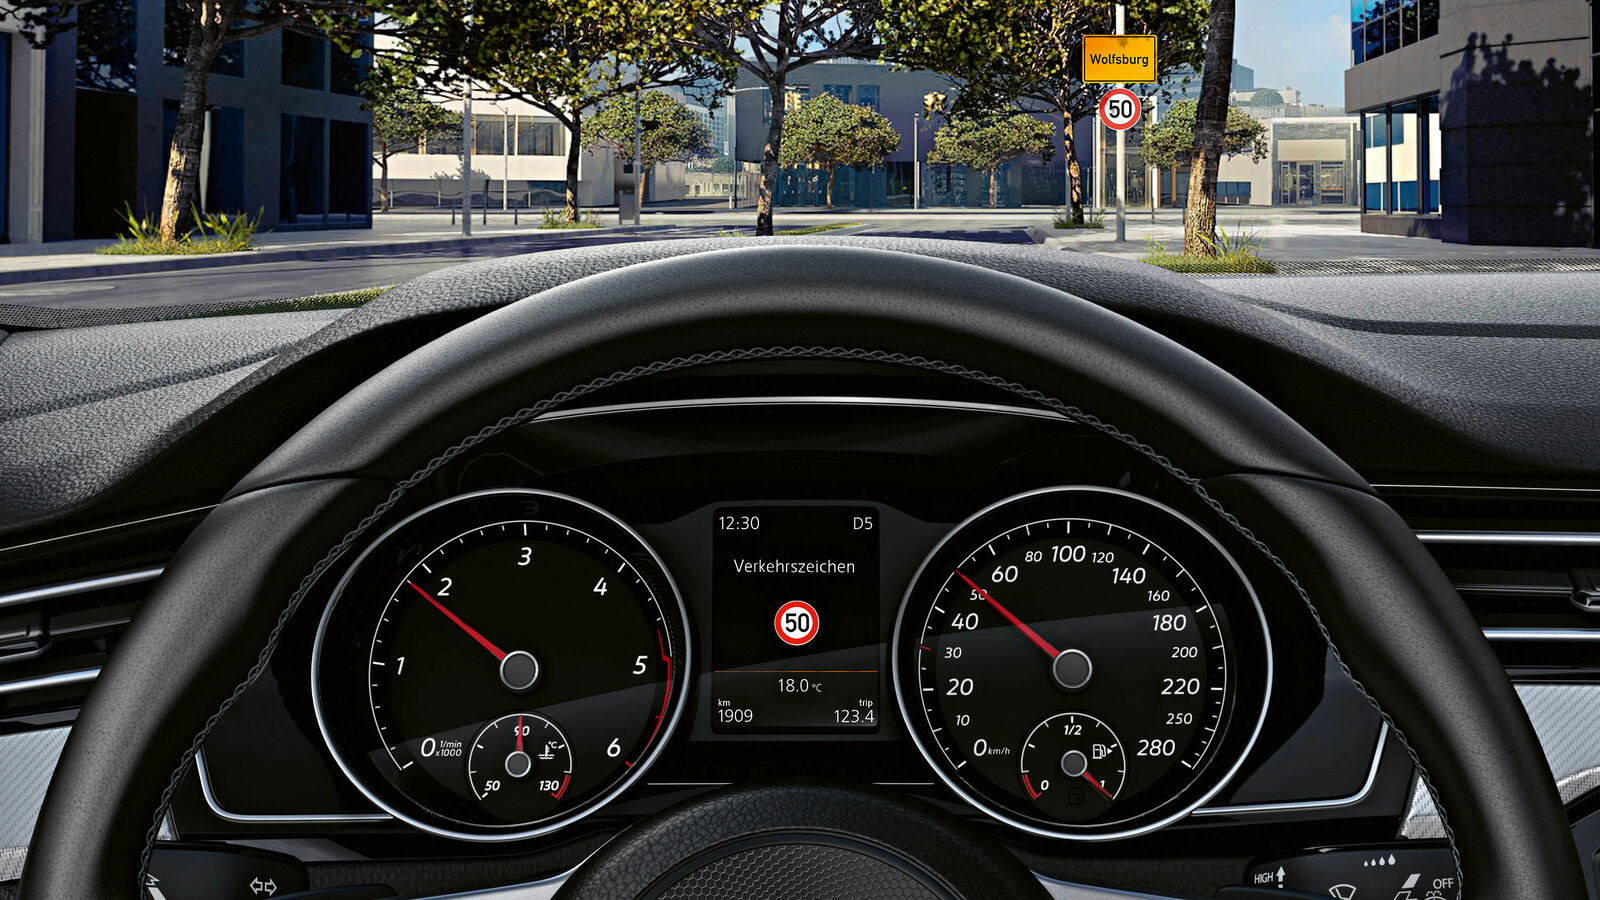 Verkehrszeichenerkennung VW Erklärfilm 